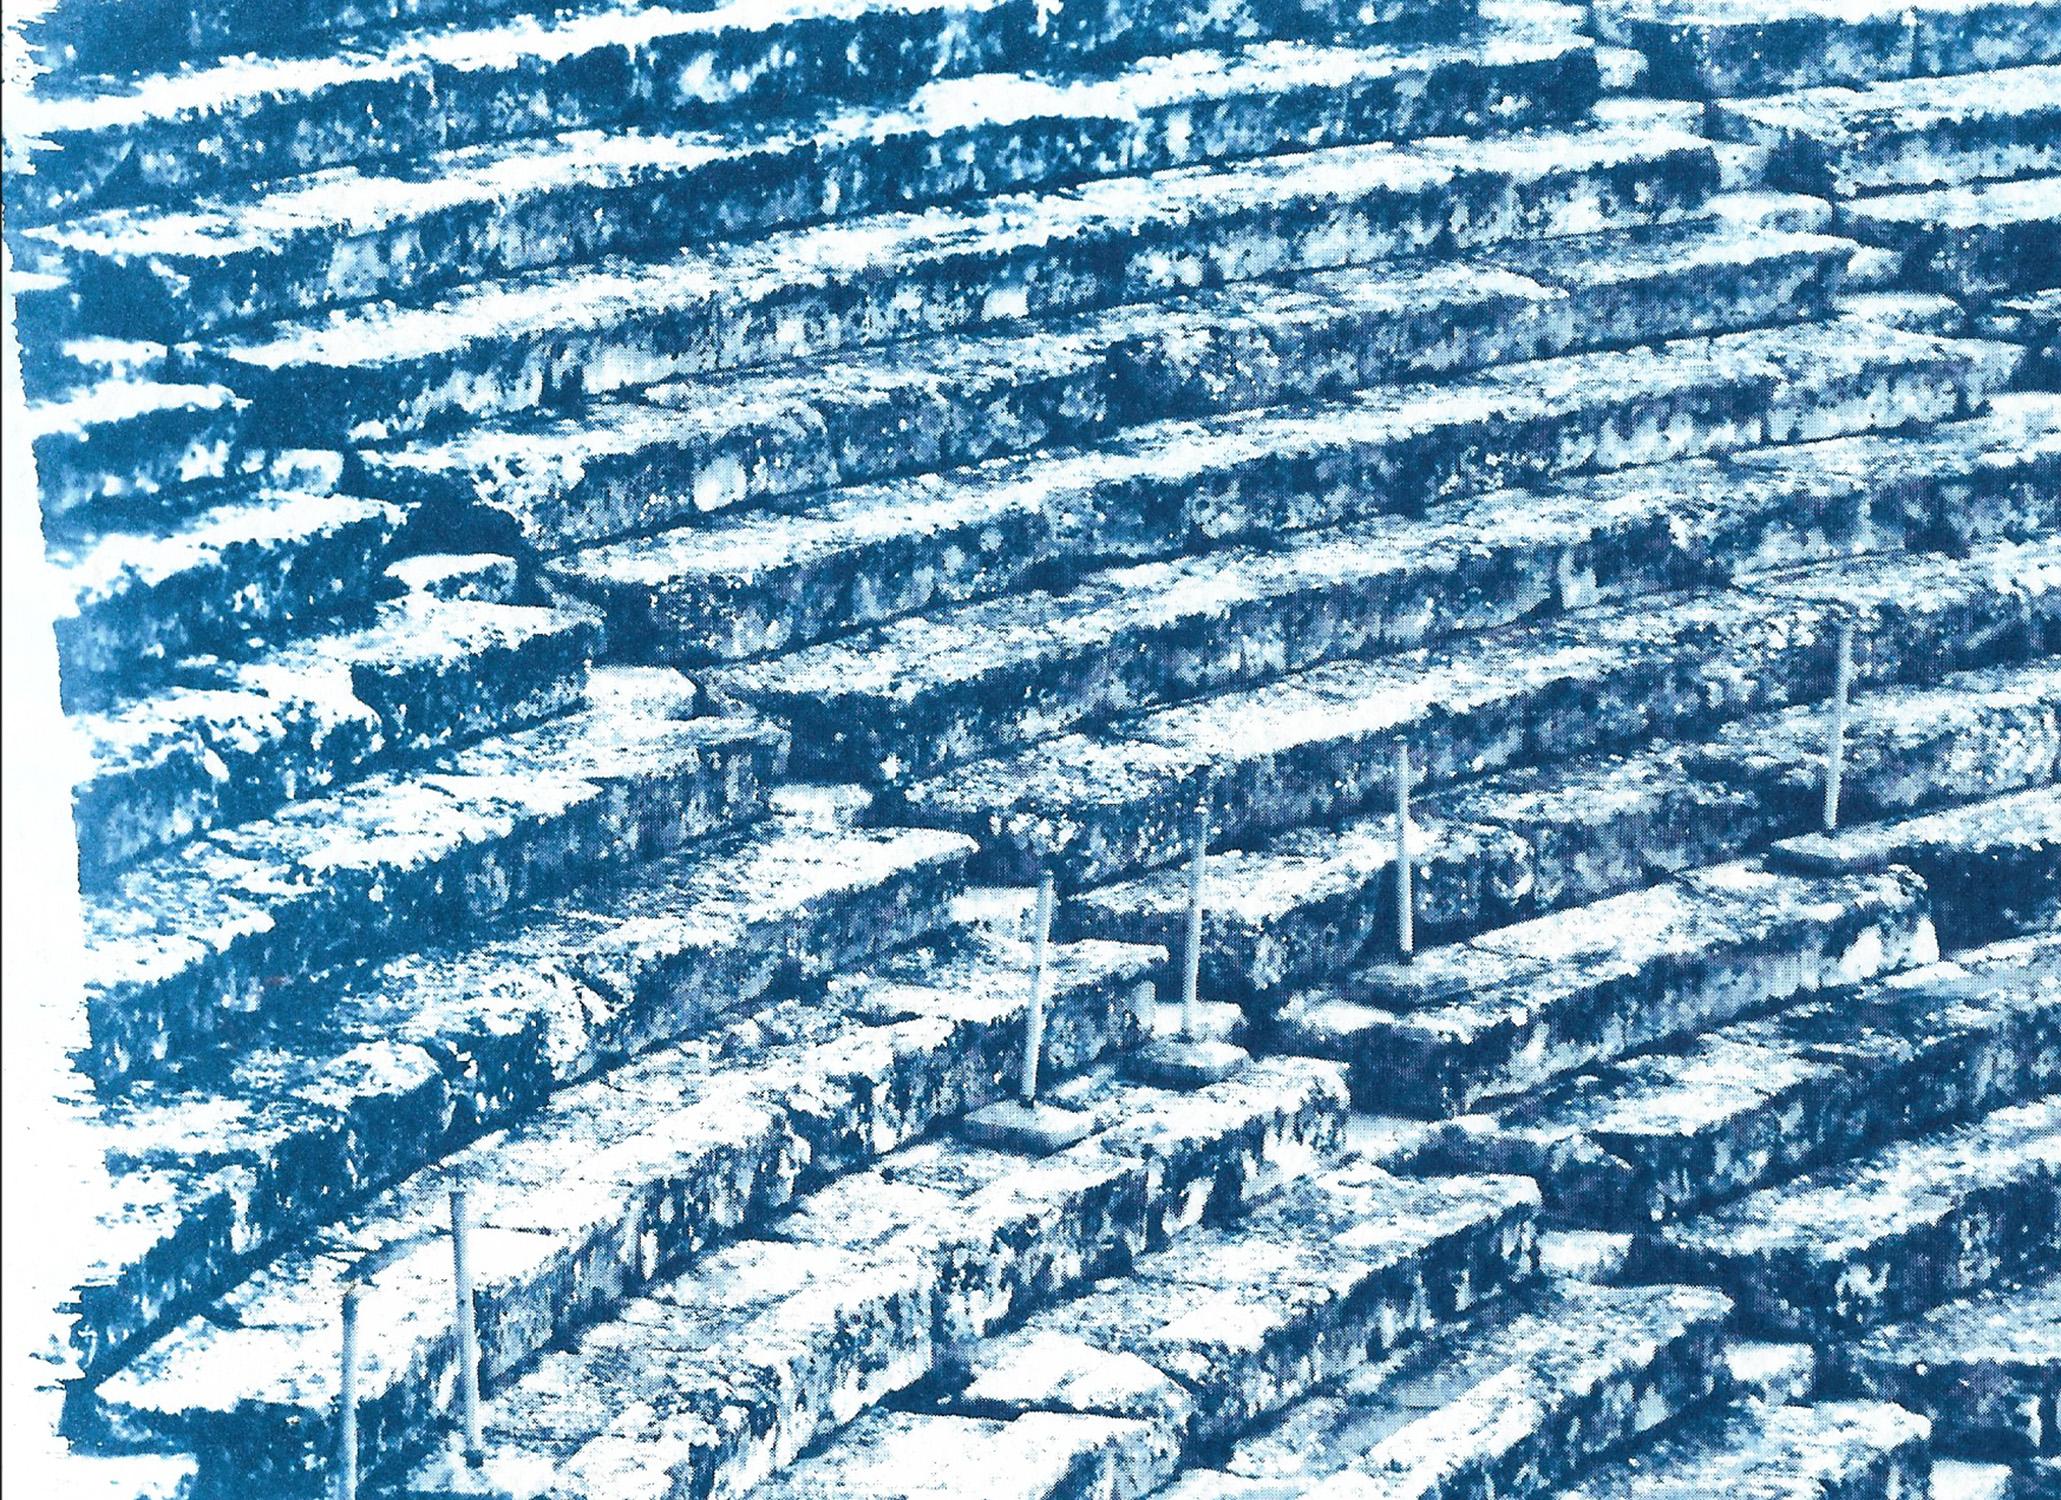 Dies ist eine exklusive handgedruckte Cyanotypie in limitierter Auflage.

Einzelheiten:
+ Titel: Antikes römisches Amphitheater 
+ Jahr: 2022
+ Auflagenhöhe: 50
+ Gestempelt und mit Echtheitszertifikat versehen
+ Maße: 70x100 cm (28x 40 in.), ein